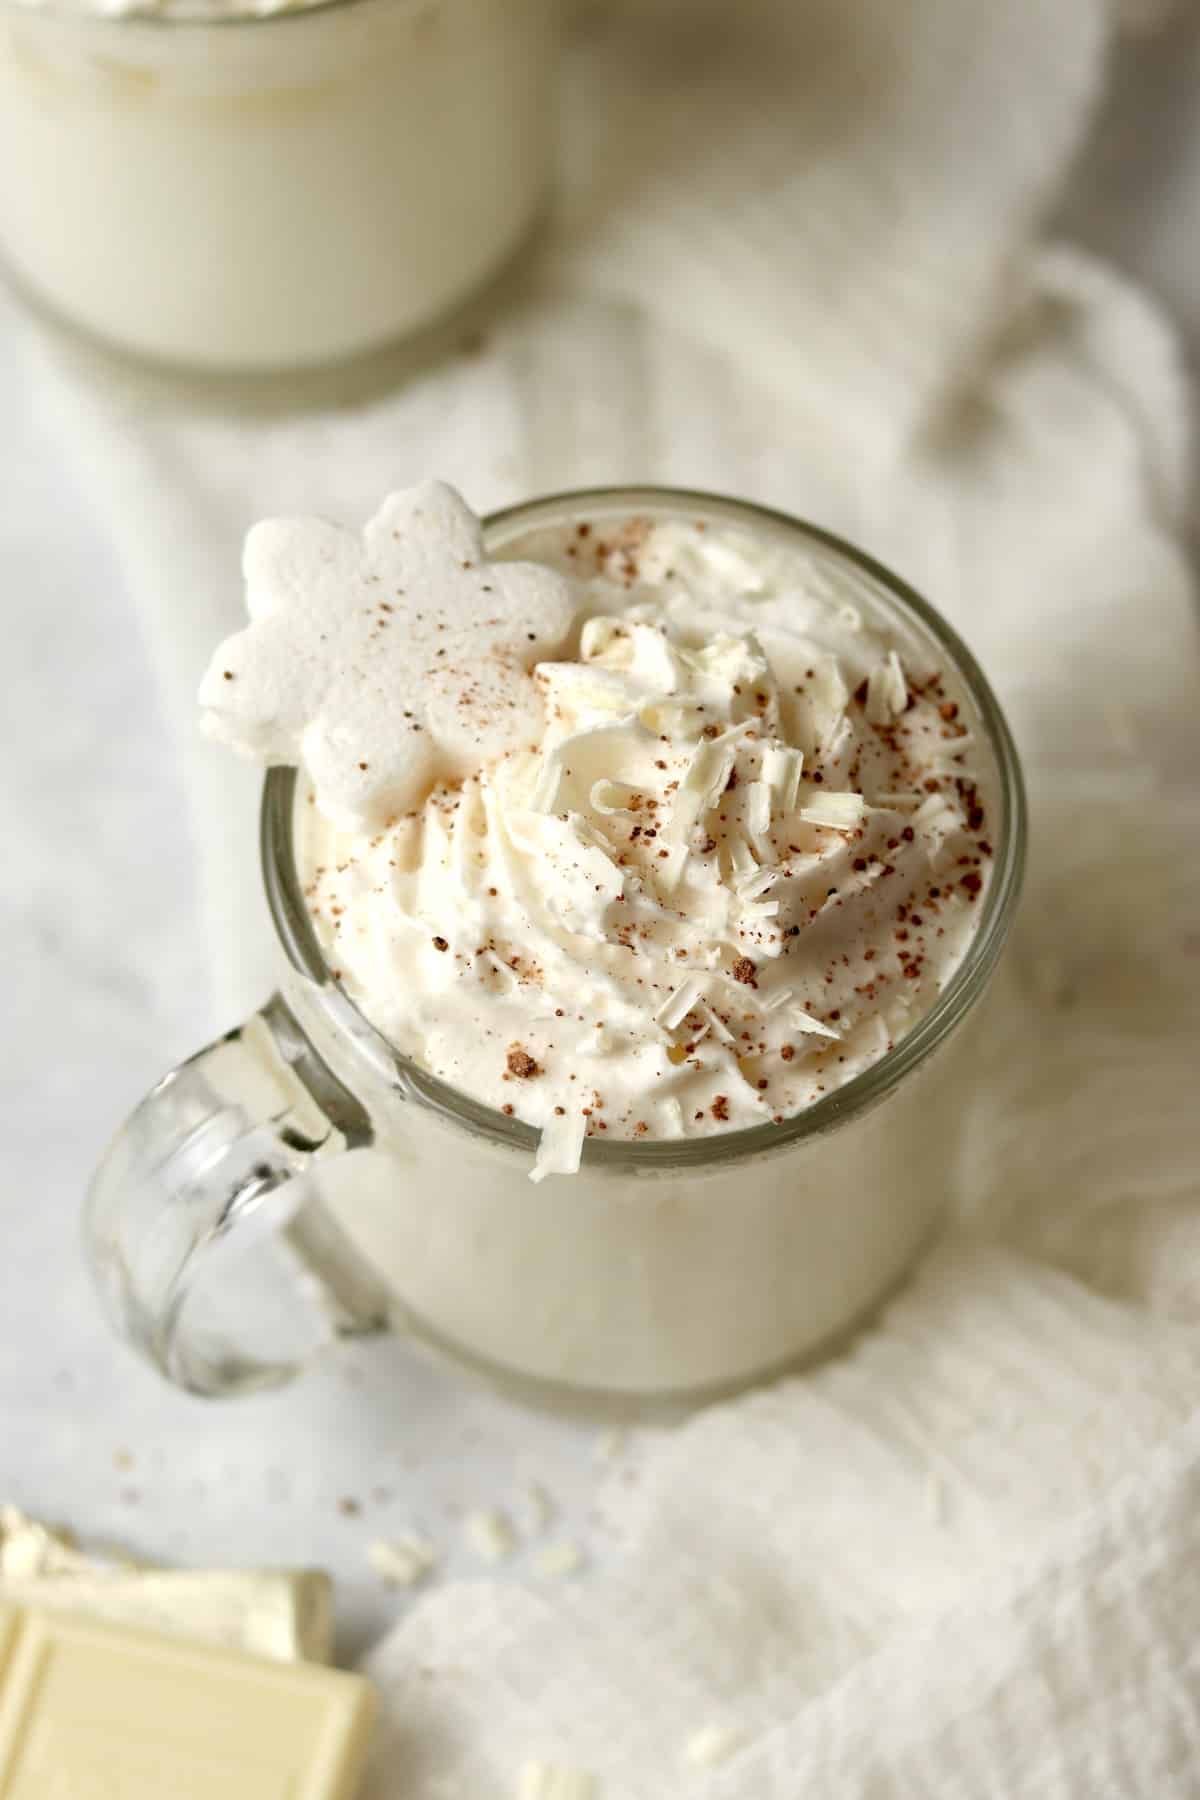 white hot chocolate Starbucks copycat in mugs with chocolate shavings.